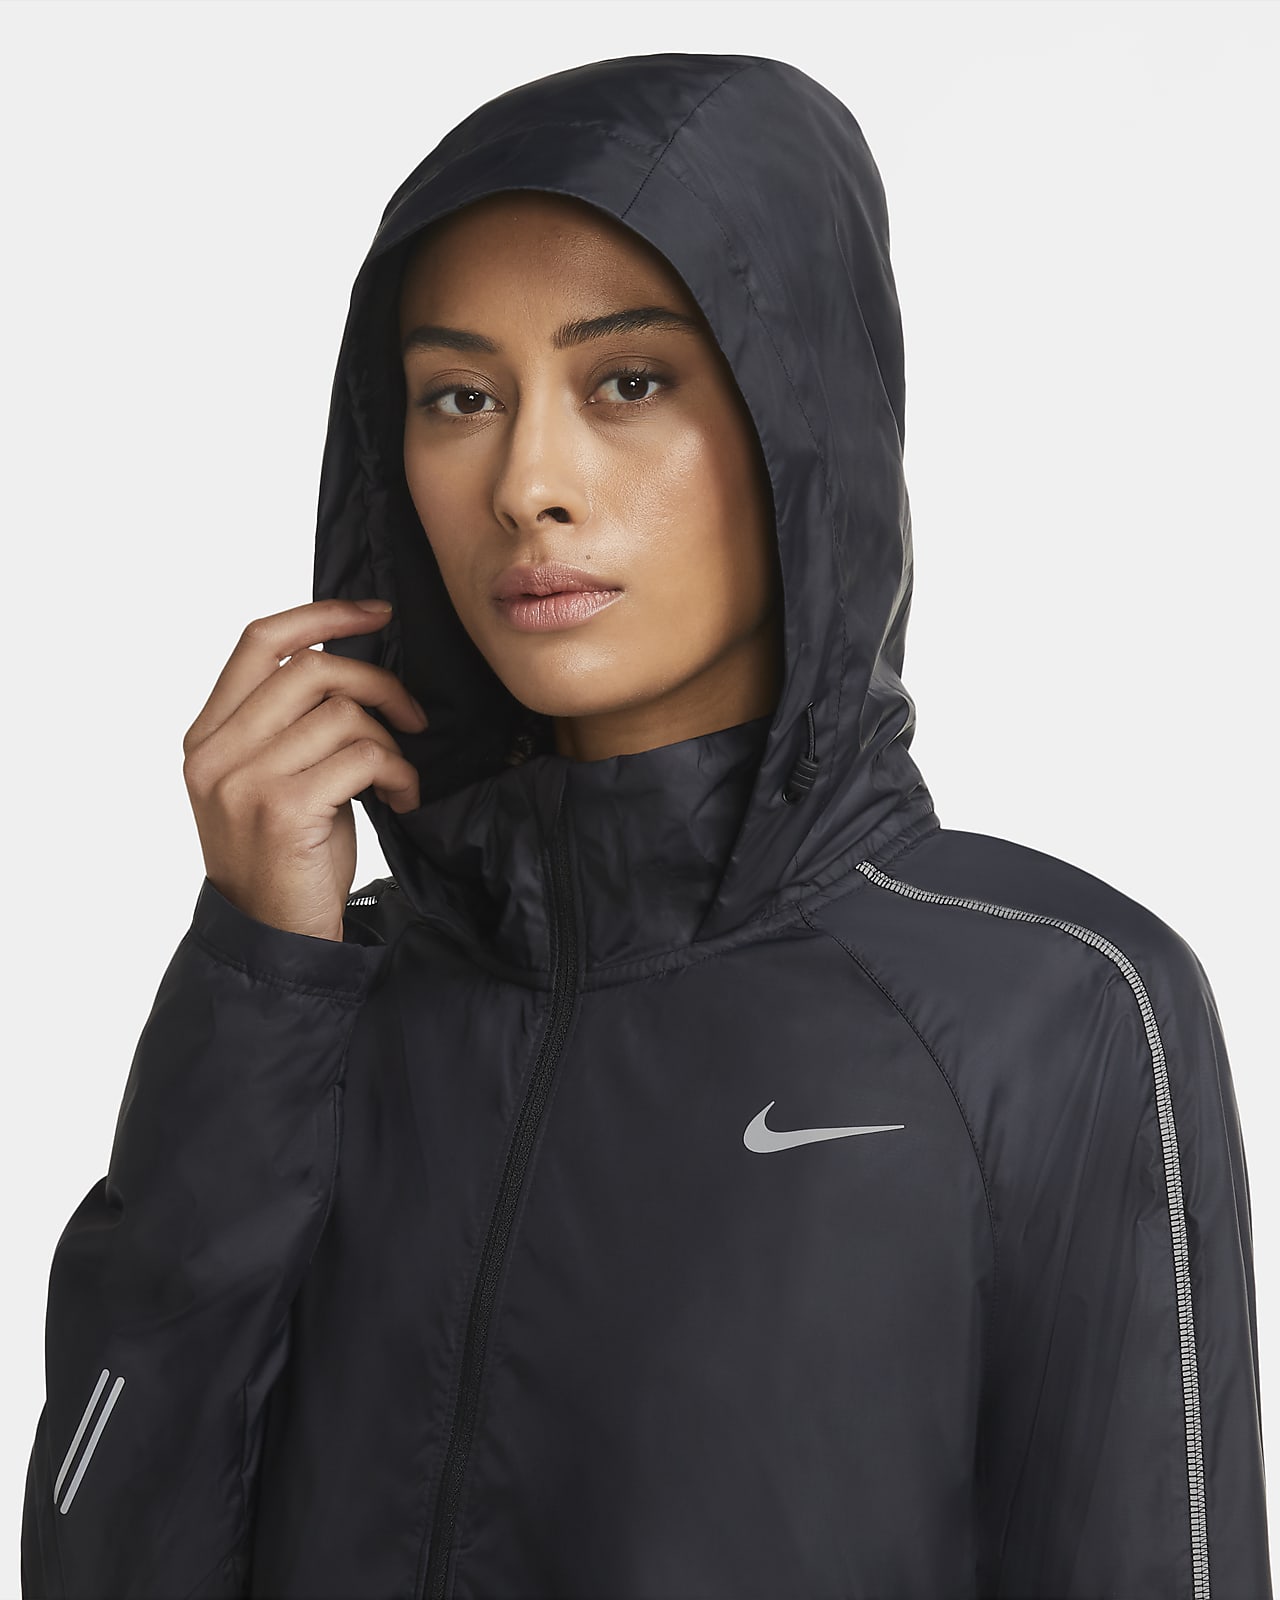 Vriend drinken Migratie Nike Shield Women's Running Jacket. Nike SA